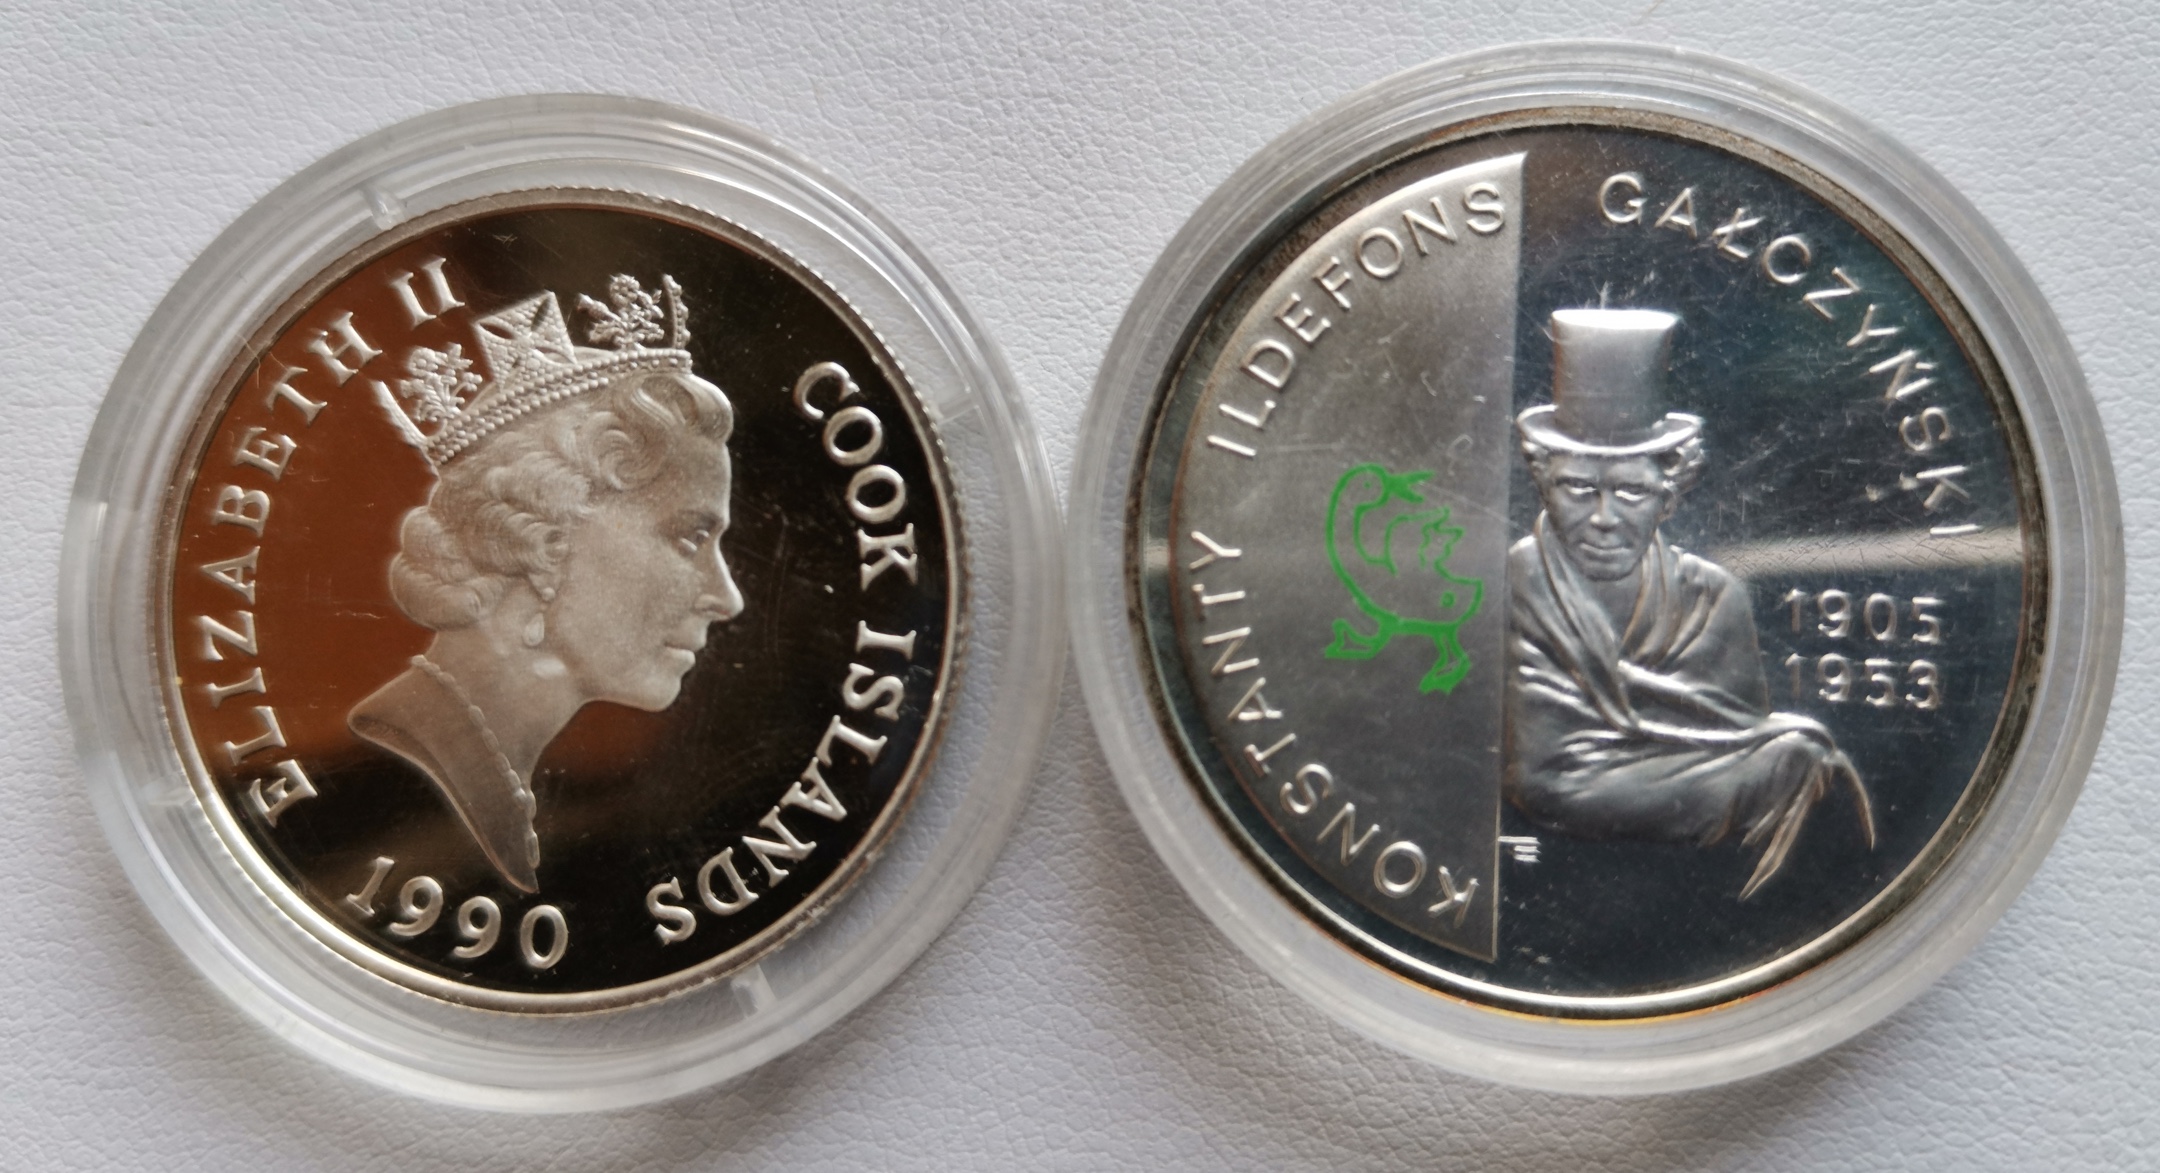 小银币两枚(波兰2005年诗人盖西尼斯基10兹罗提彩色银币,库克1990年